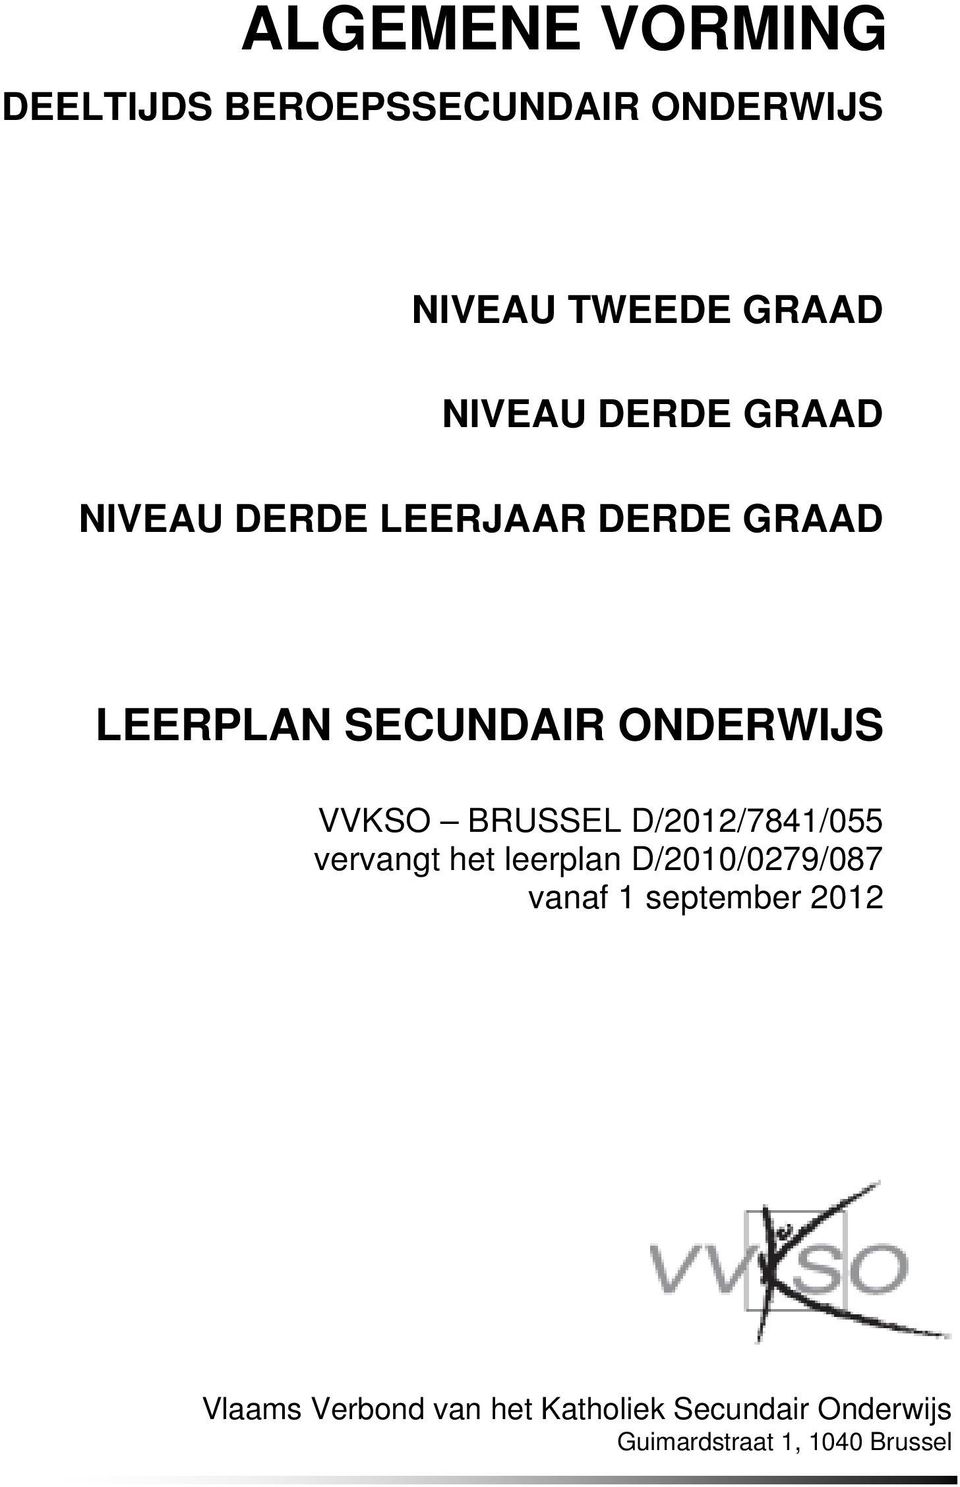 ONDERWIJS VVKSO BRUSSEL vervangt het leerplan D/2010/0279/087 vanaf 1